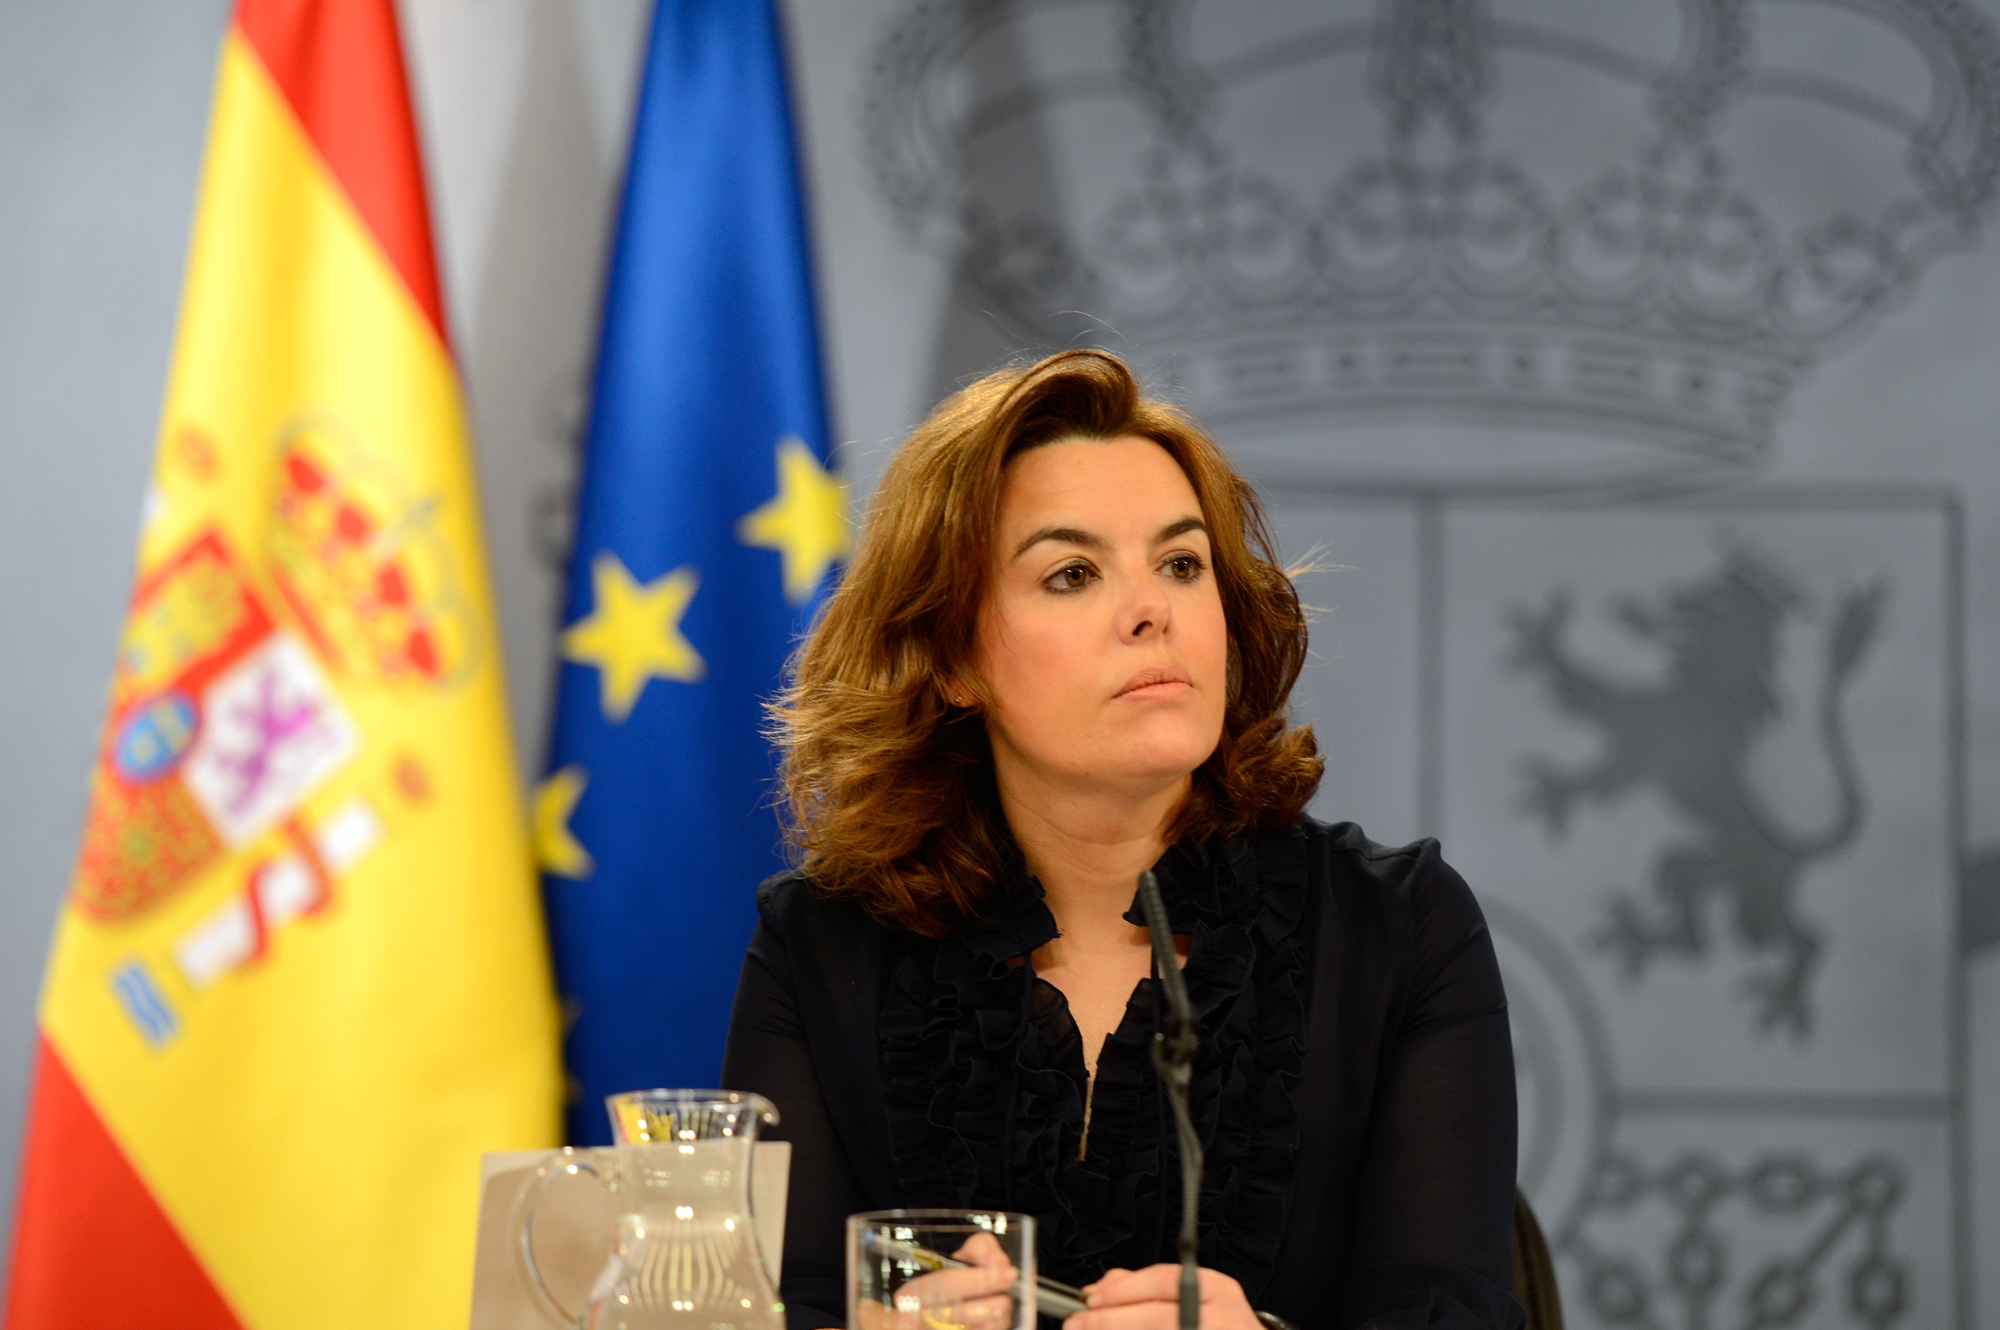 El Gobierno español se compromete a presentar la evaluación del Plan de Derechos Humanos en el Congreso y poner en marcha los trabajos de elaboración de la nueva estrategia